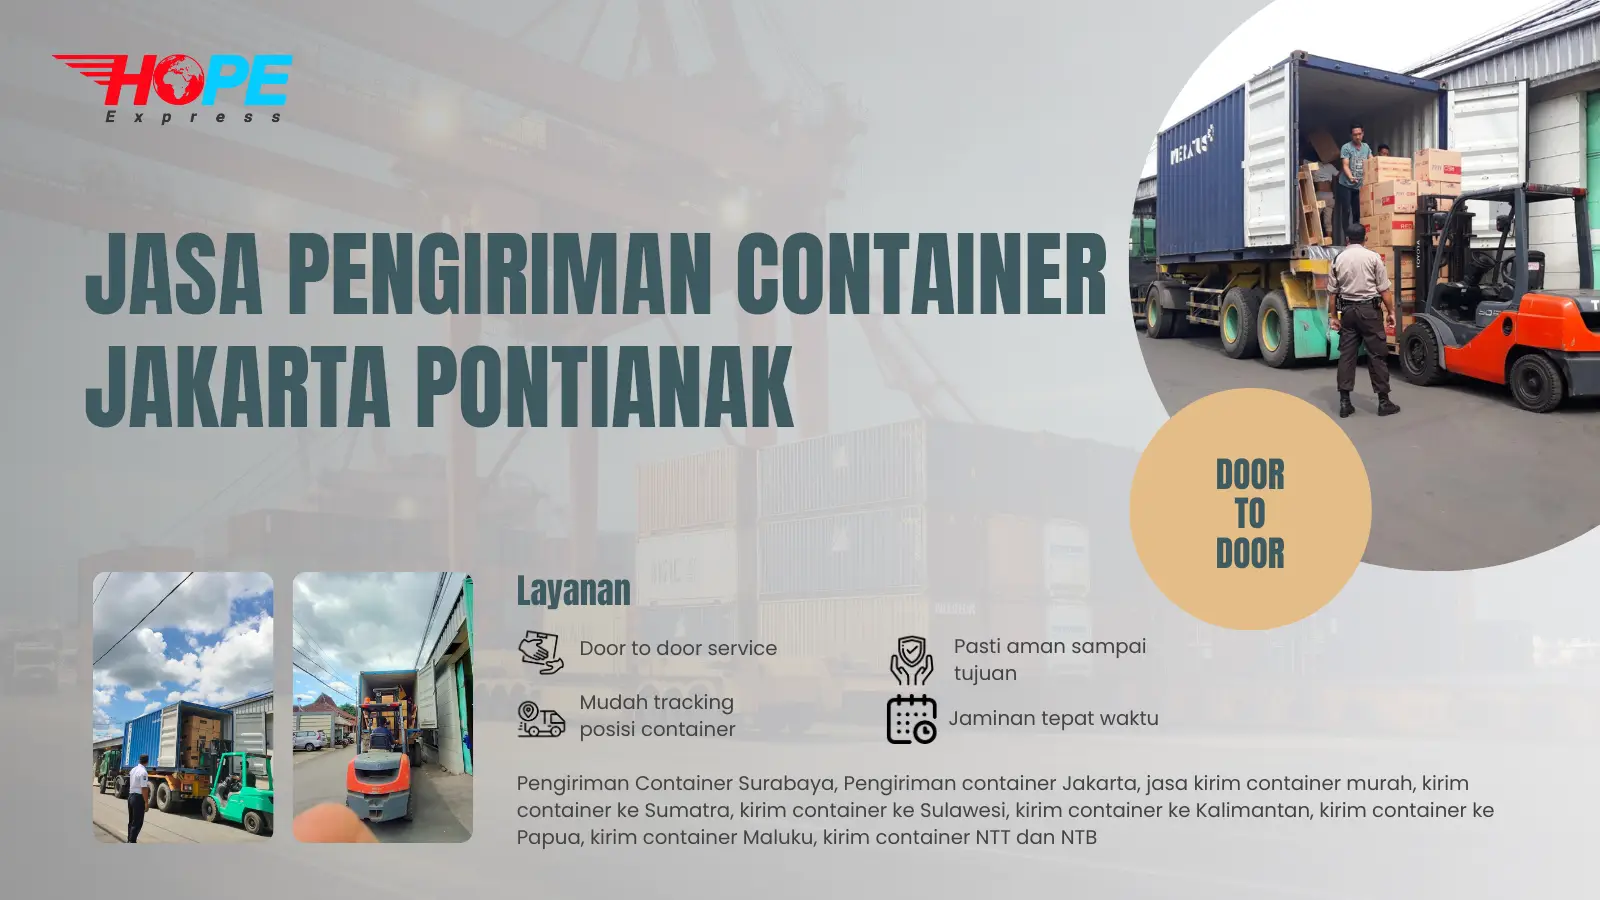 Jasa Pengiriman Container Jakarta Pontianak